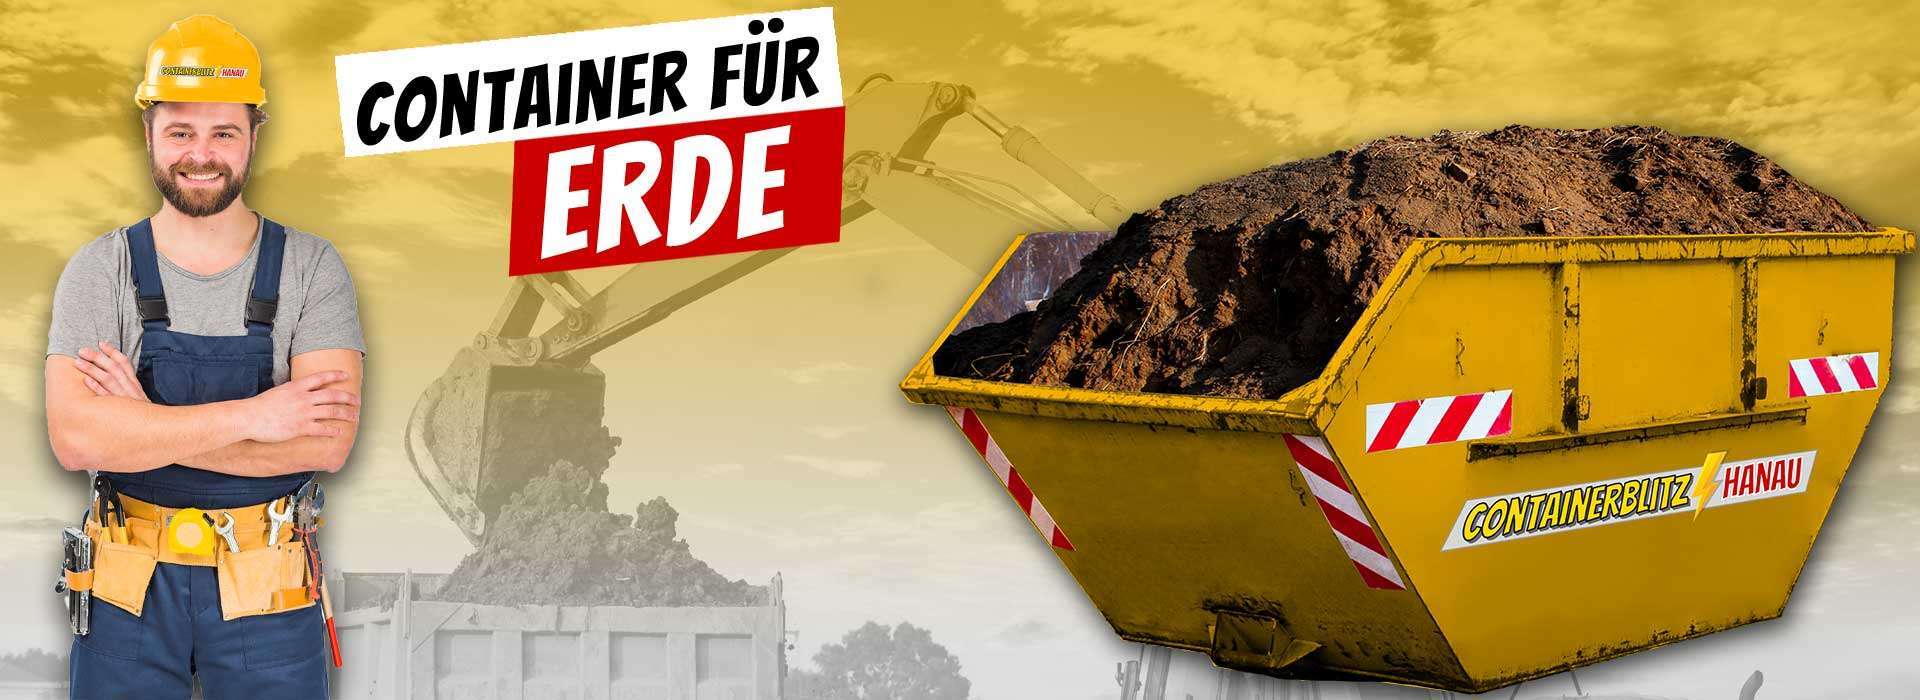 Container Erde entsorgen Hanau